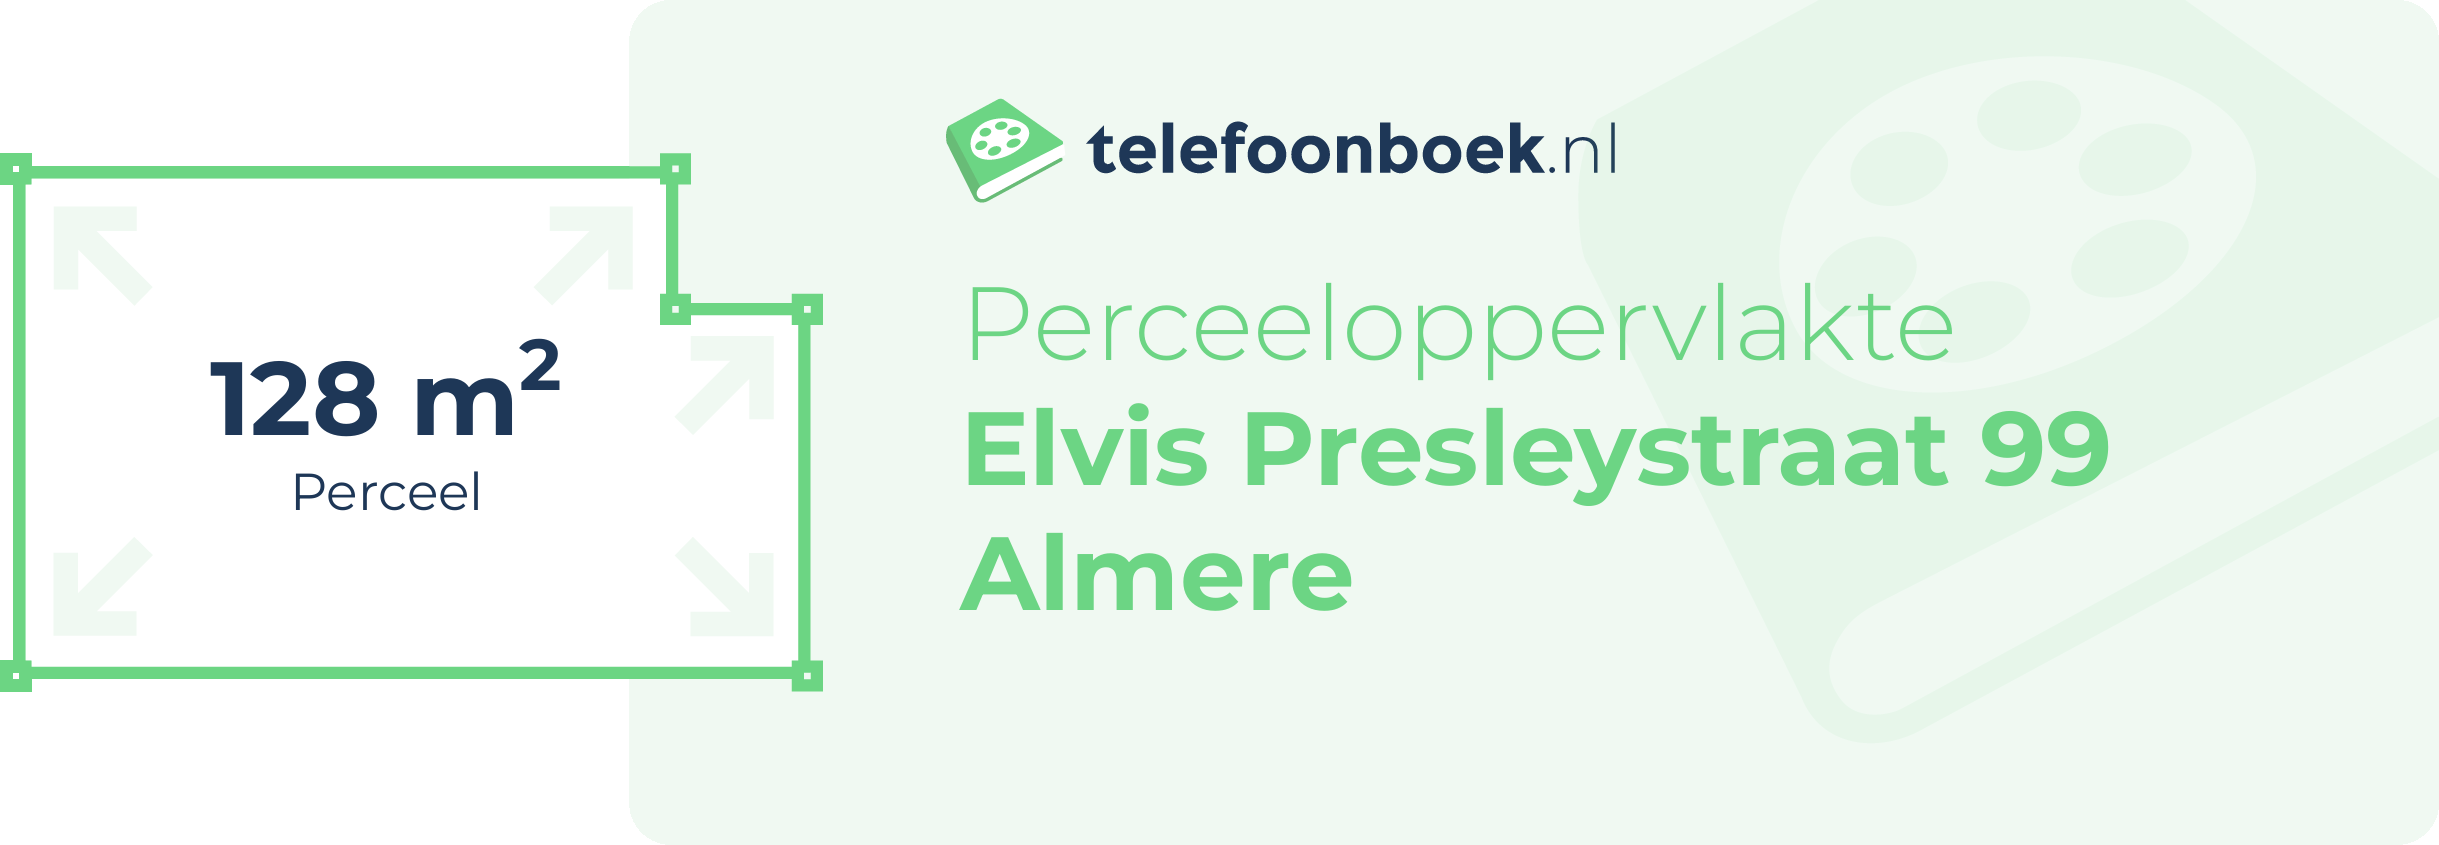 Perceeloppervlakte Elvis Presleystraat 99 Almere